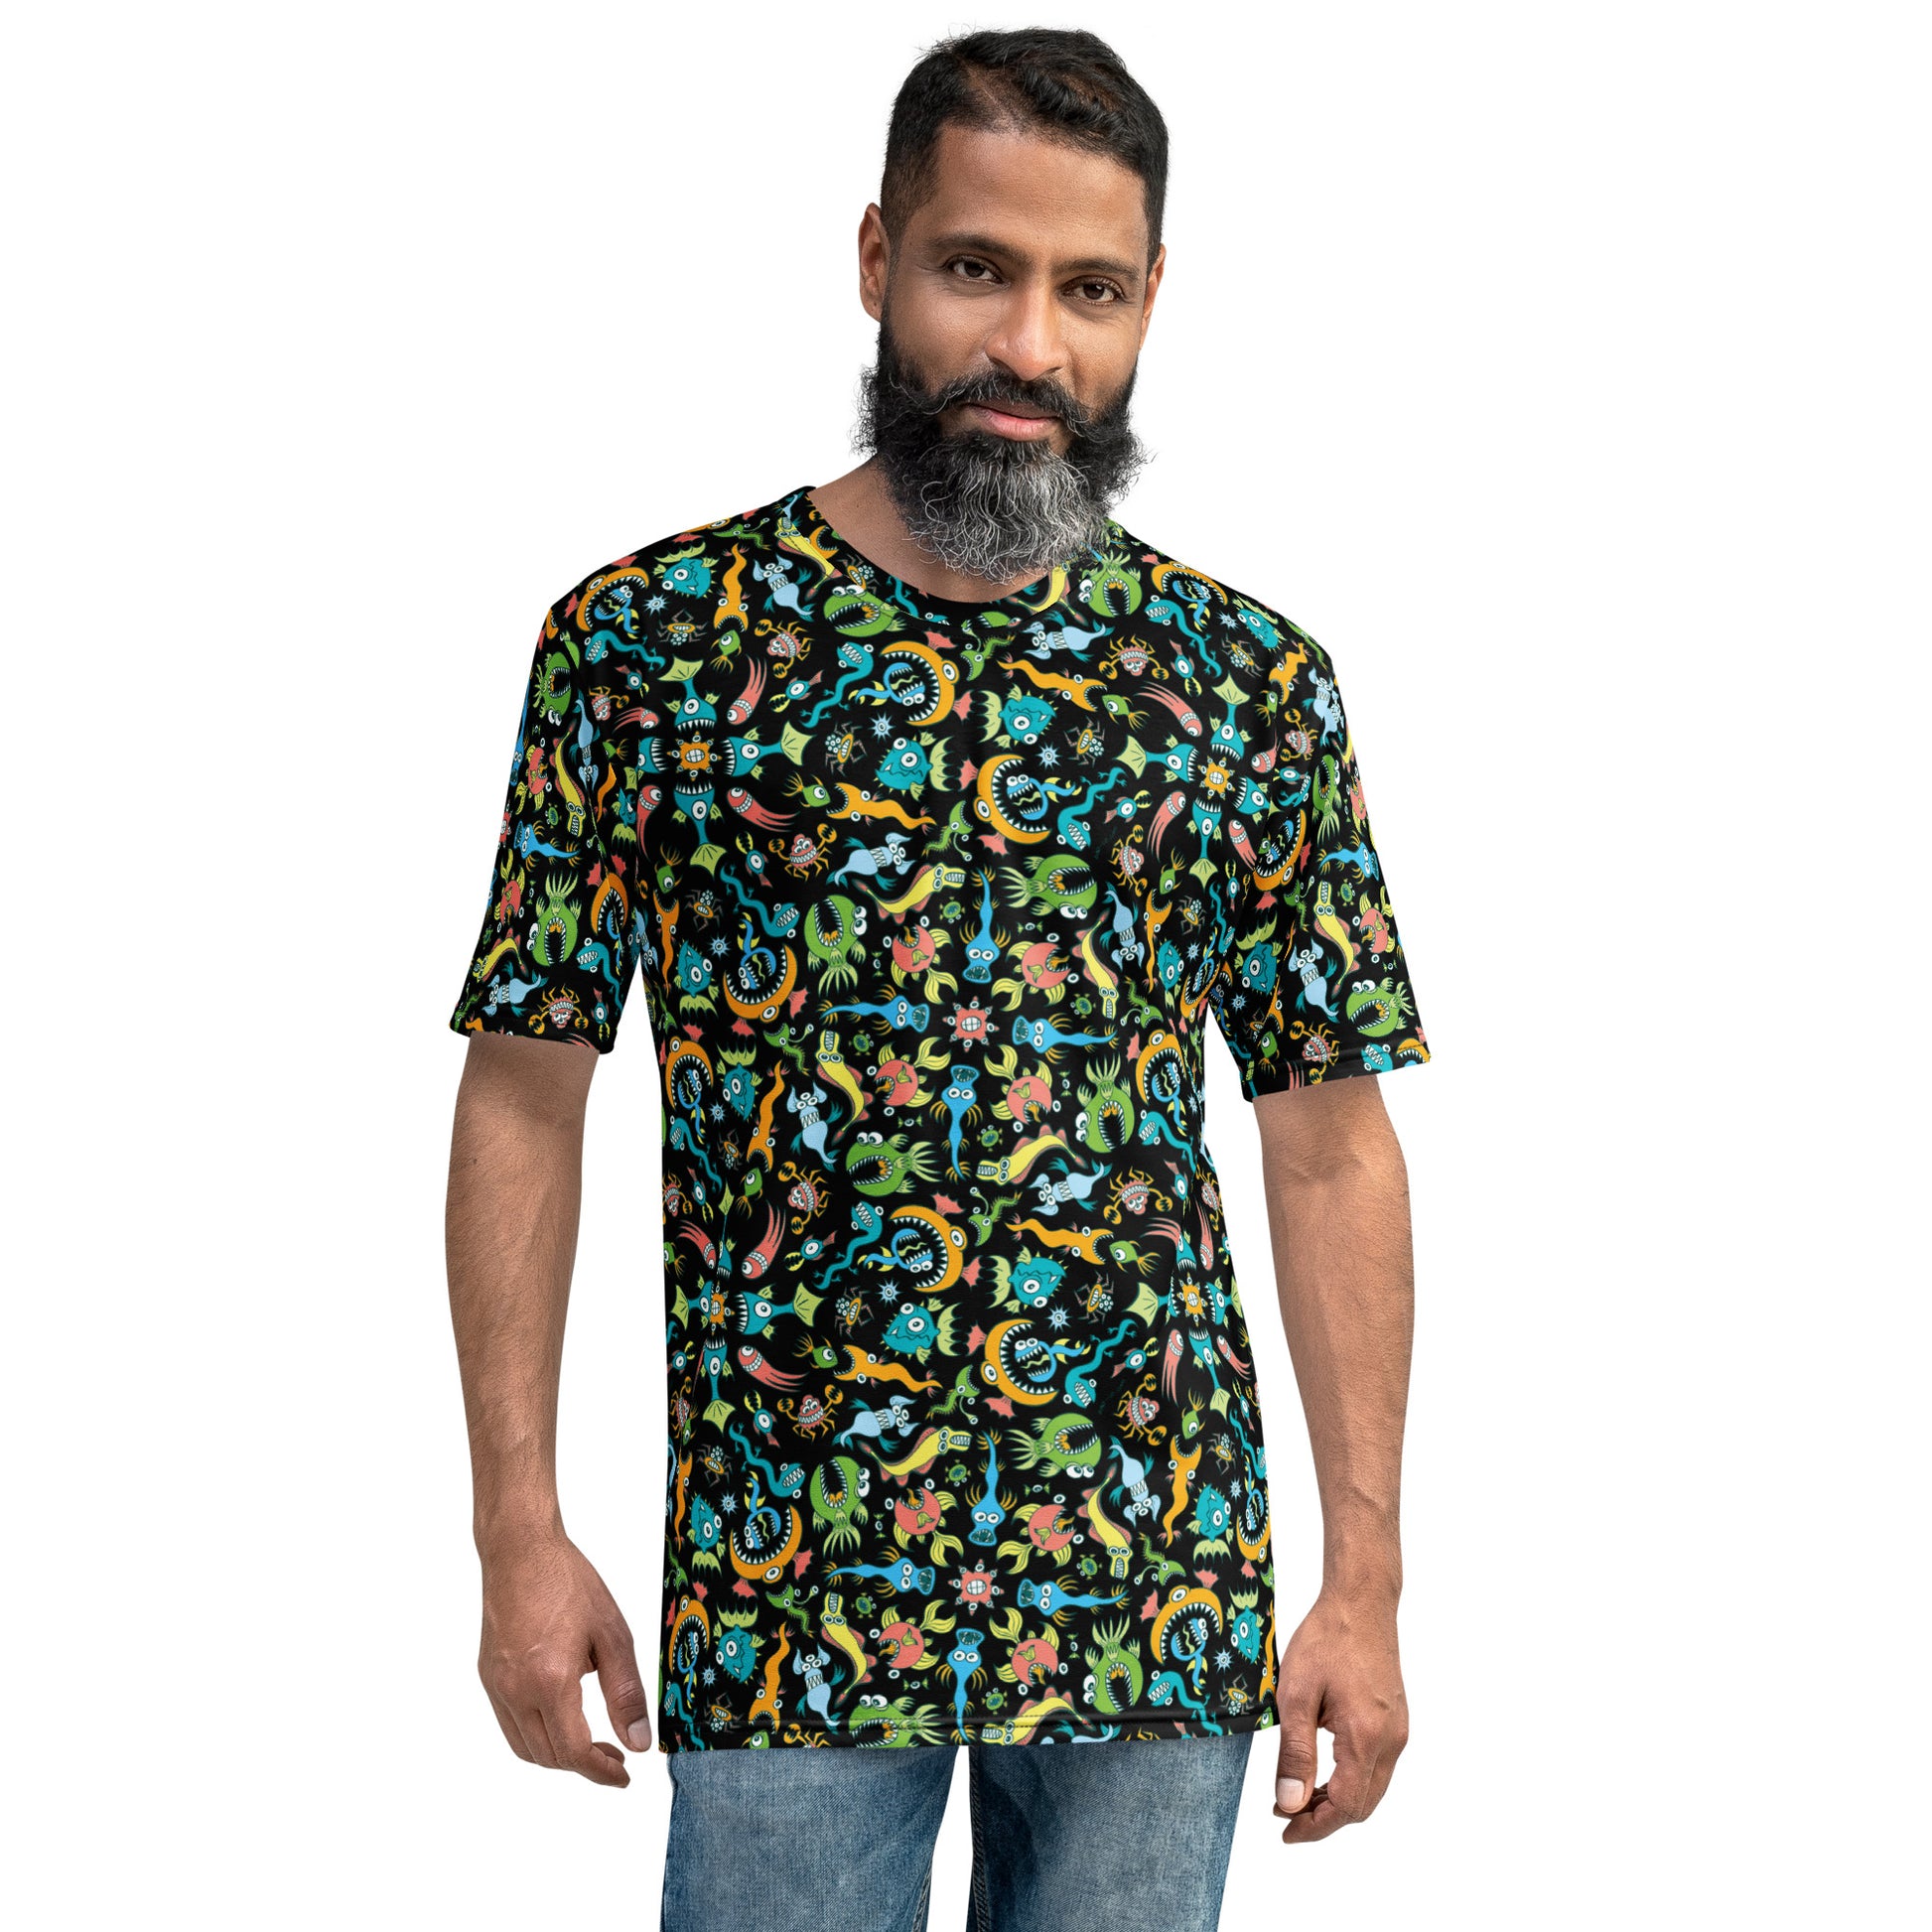 Sea creatures pattern design Men's T-shirt. Front view